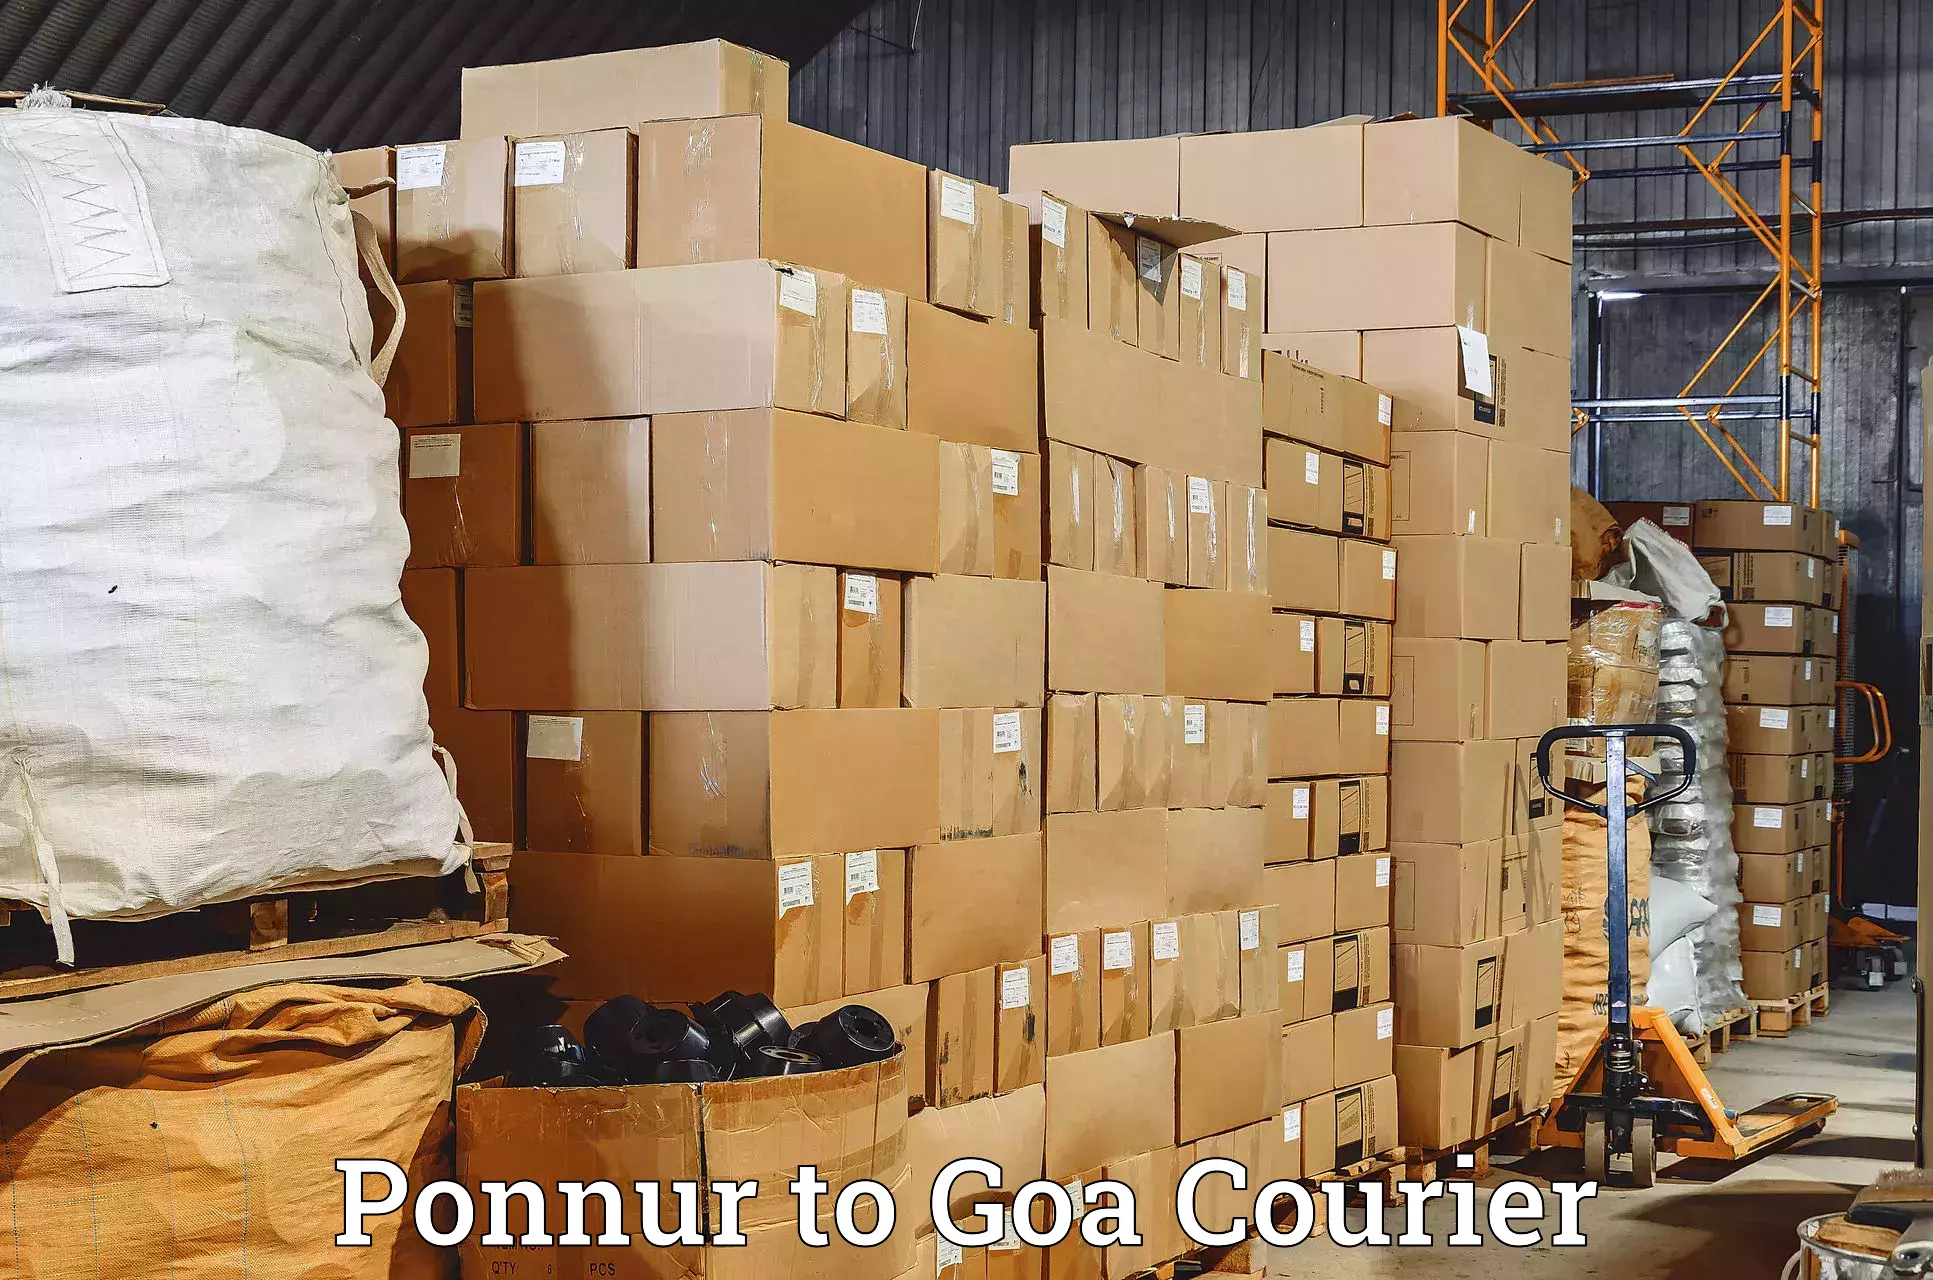 Digital courier platforms in Ponnur to Goa